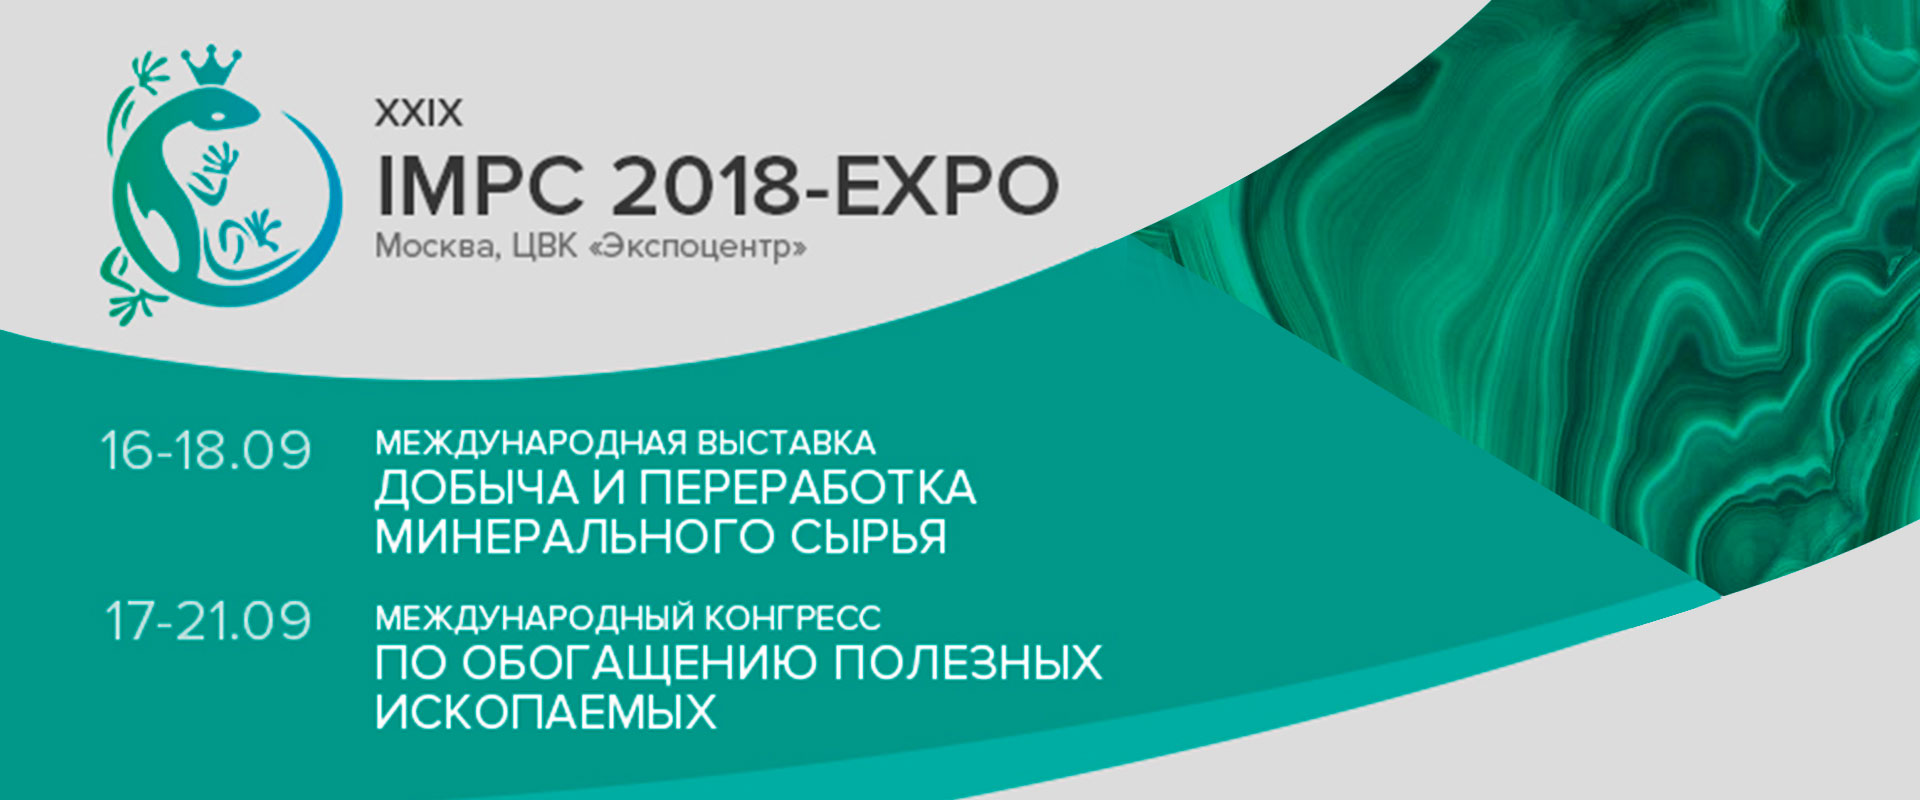 Международная выставка IMPC–EXPO 2018